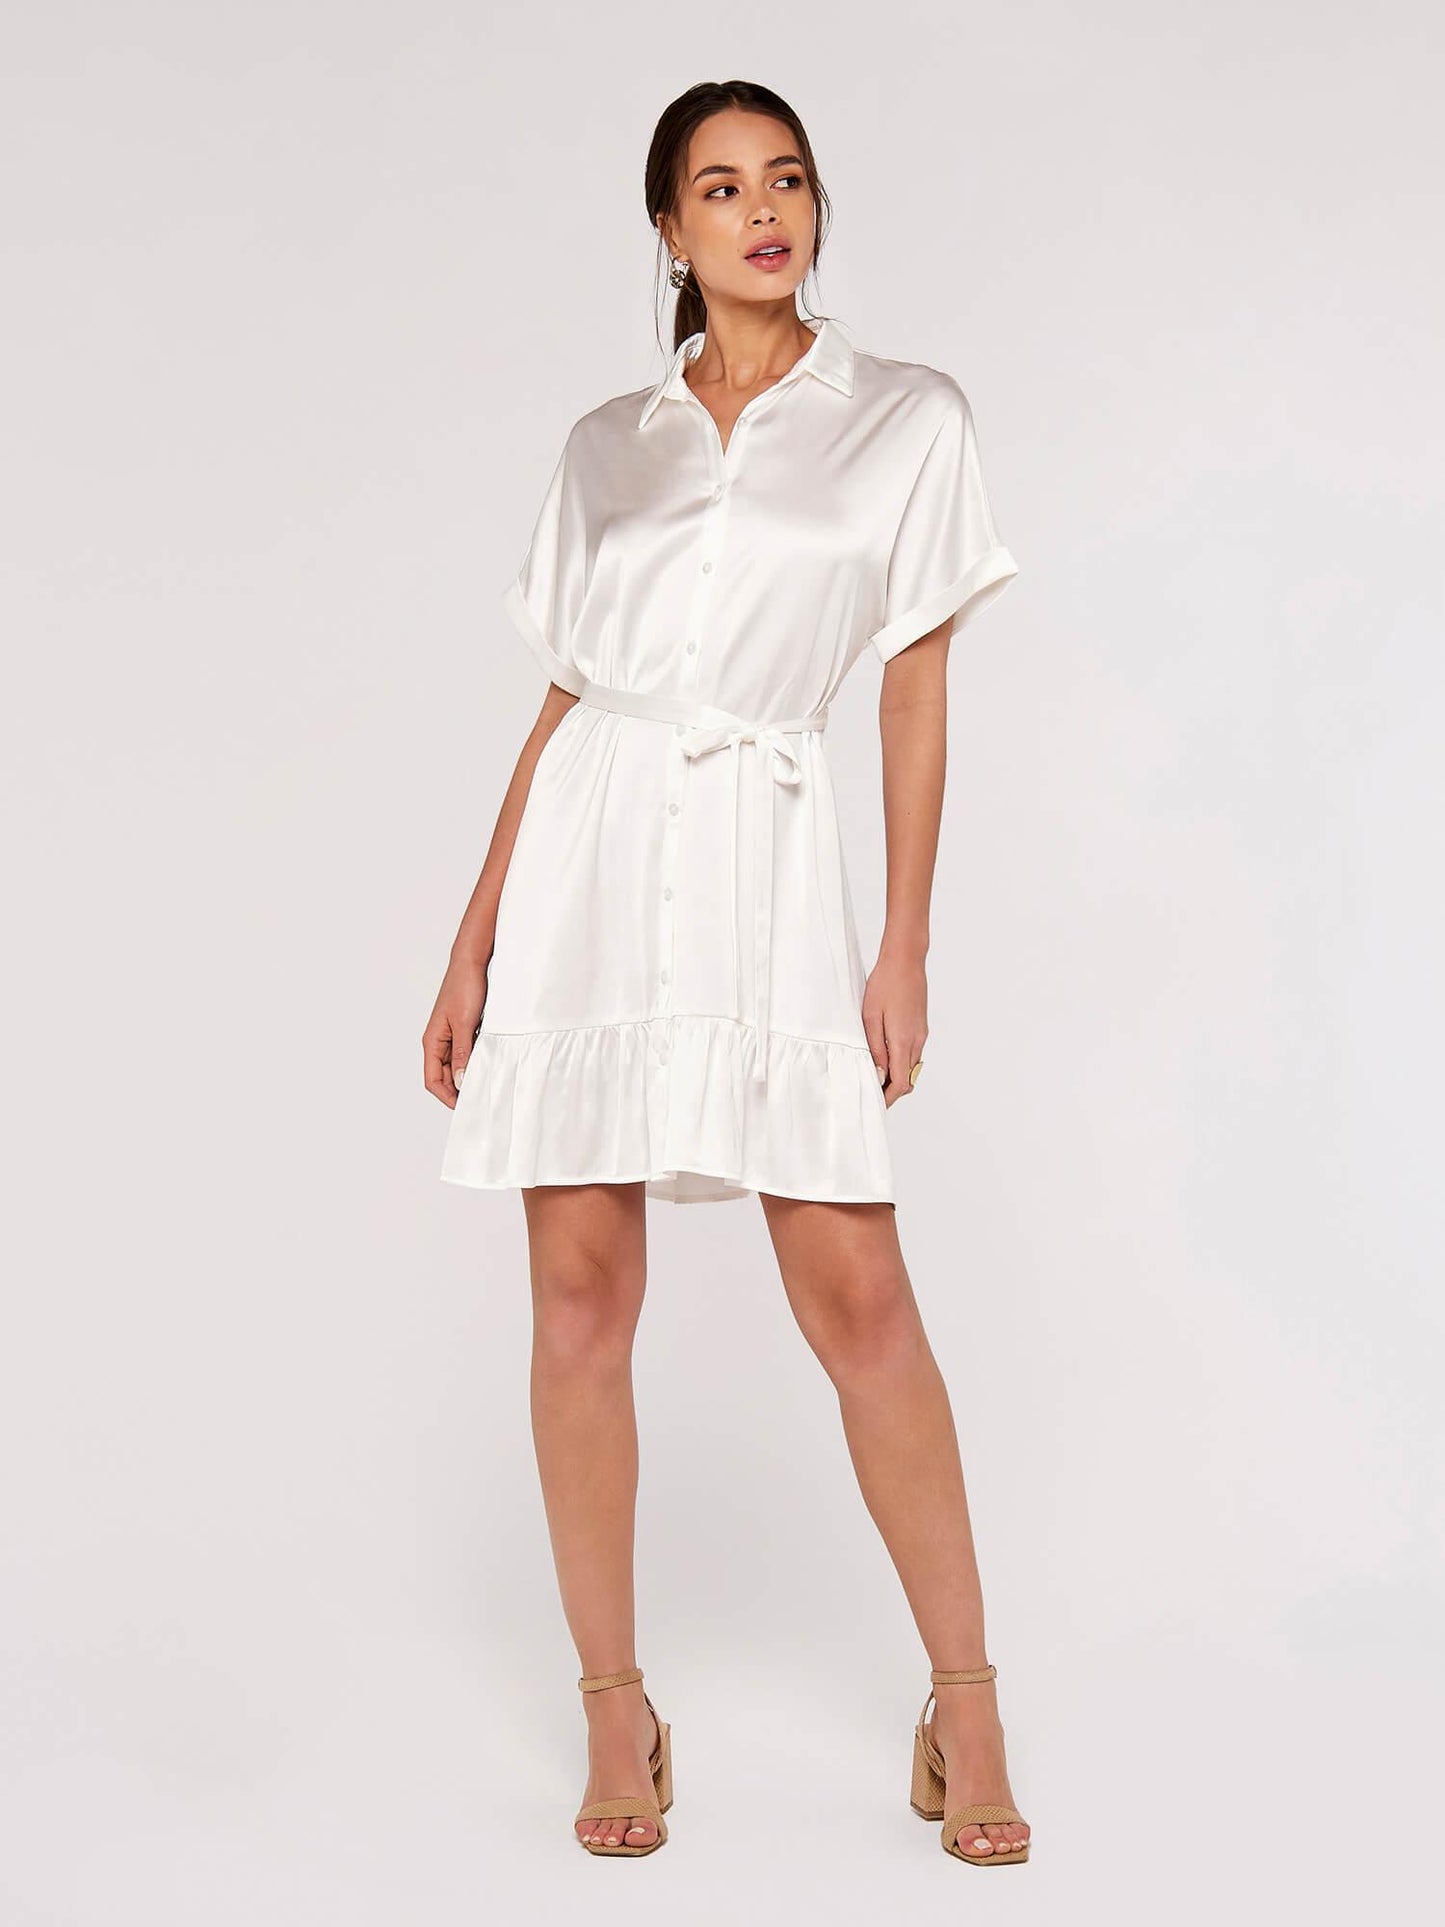 APRICOT - שמלת סאטן עם כפתורים בצבע לבן - MASHBIR//365